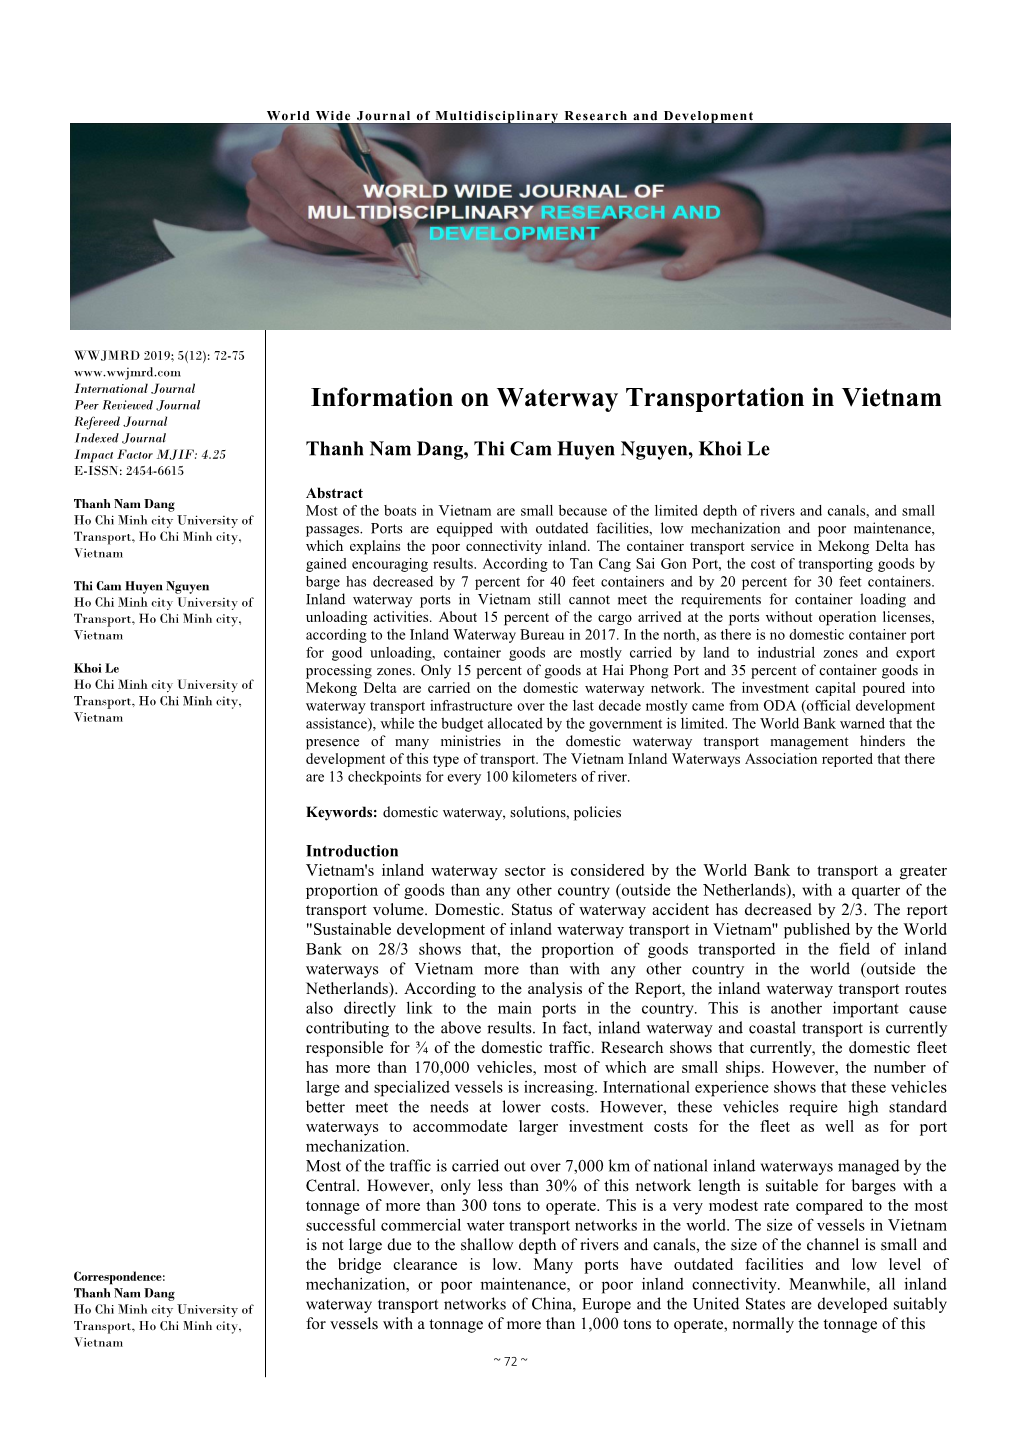 Information on Waterway Transportation in Vietnam